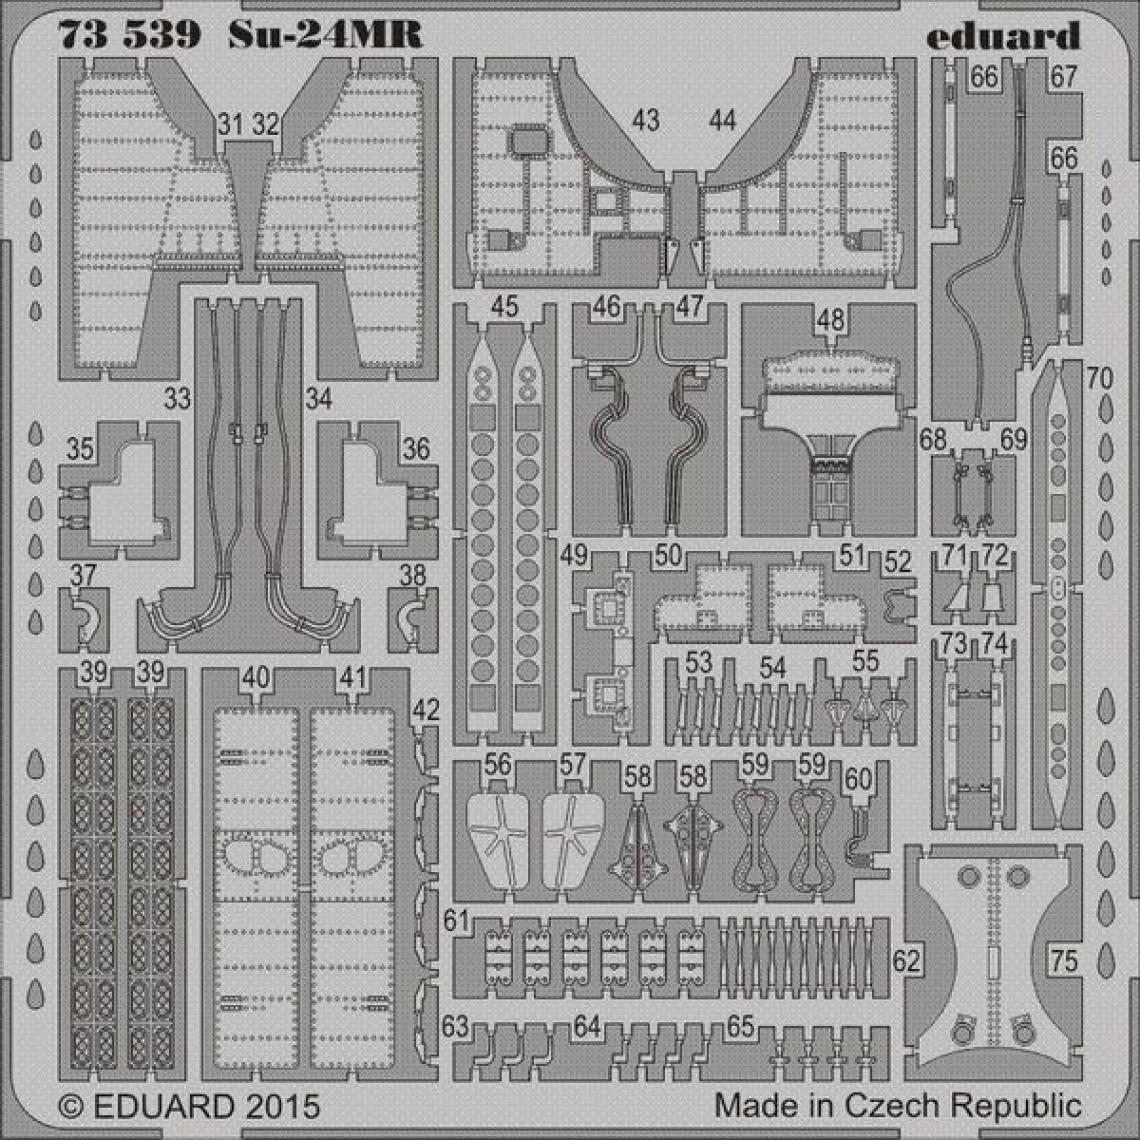 Eduard - Su-24MR for Trumpeter - 1:72e - Eduard Accessories - Accessoires et pièces